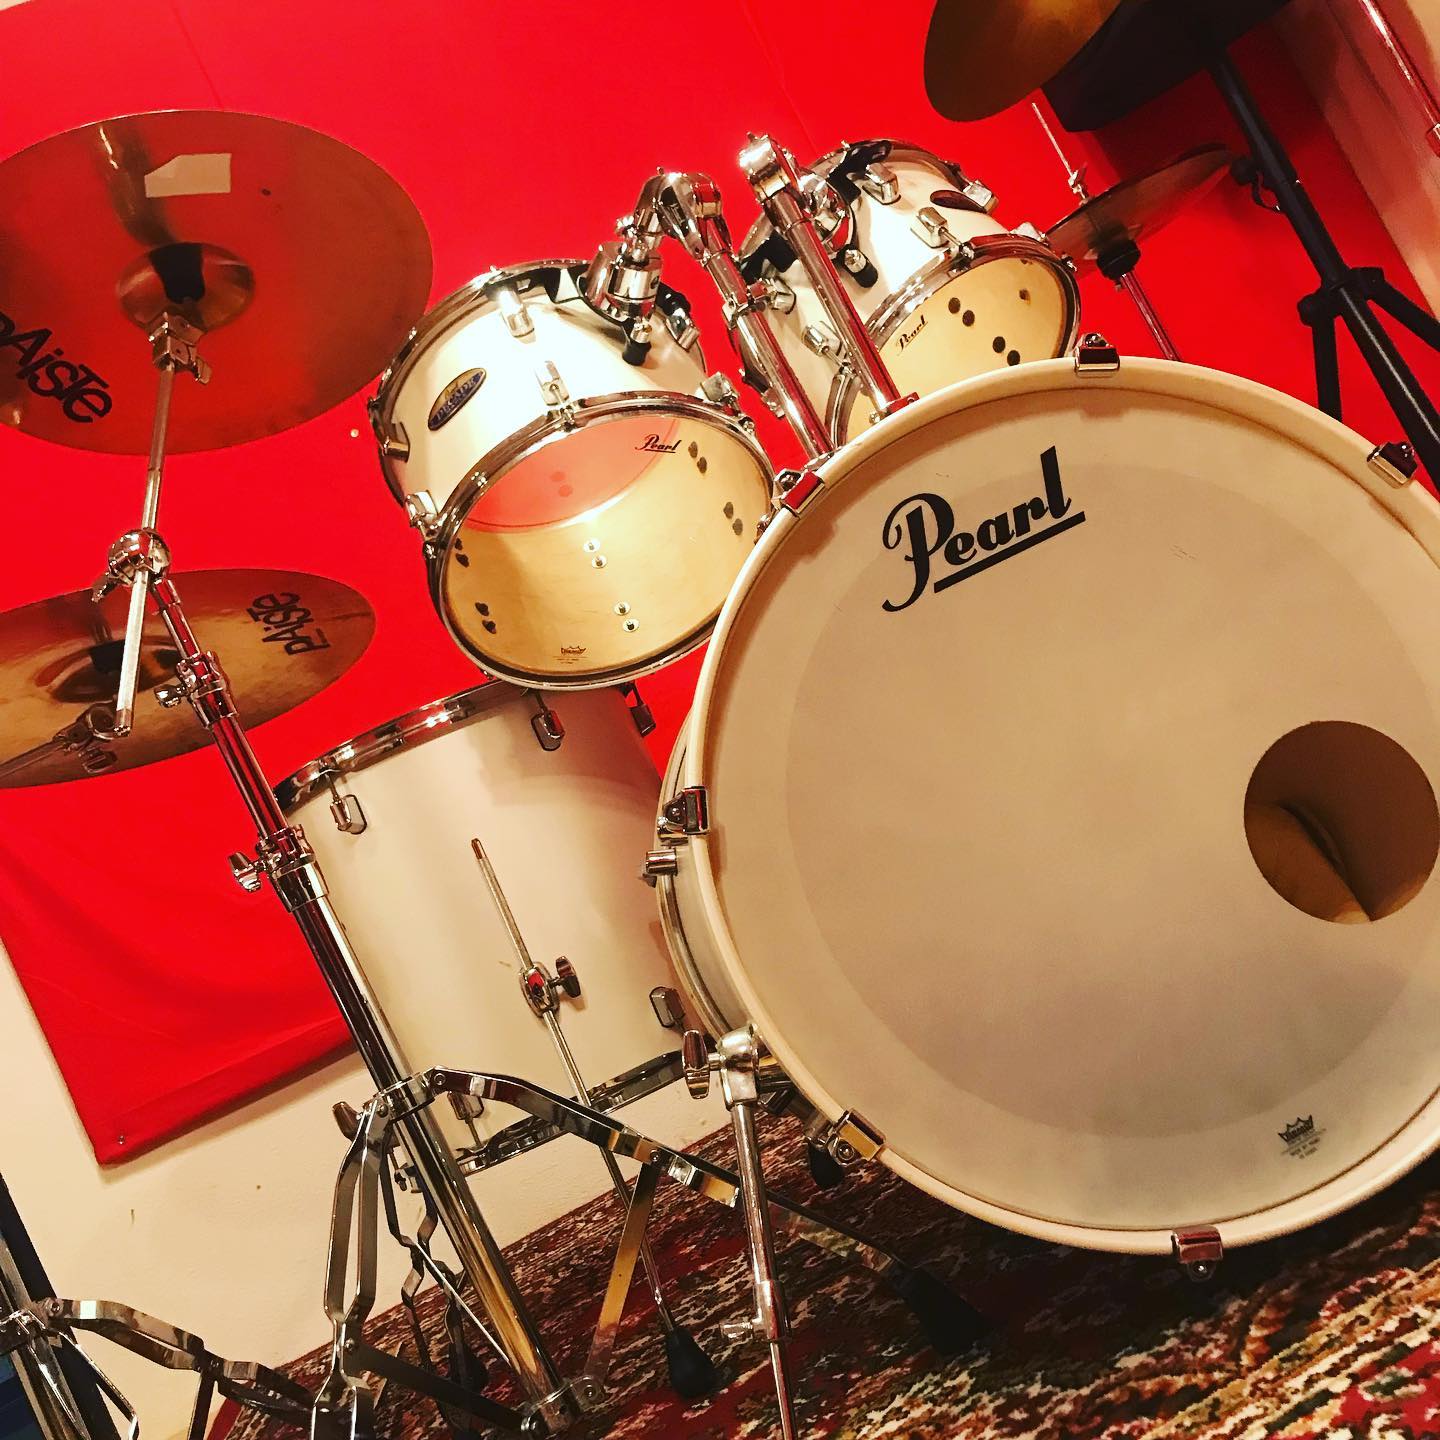 A・Cスタジオで採用しているpearlのDecade Mapleです。メイプル材100%で薄めのシェルとなっていますが、たっぷりとした低音域を得られます。バスドラムは22インチのスタンダードなサイズです。#音楽スタジオ #musicstudio #pearl #pearldrums #pearldrumset #パール #パールドラム #pearldecademaple #decademaple #ドラムセット #drumset #ドラム #drums #名古屋 #nagoya #千種区 #chikusa #音楽 #music #楽器#instrument #guitar #bass #piano#vocals